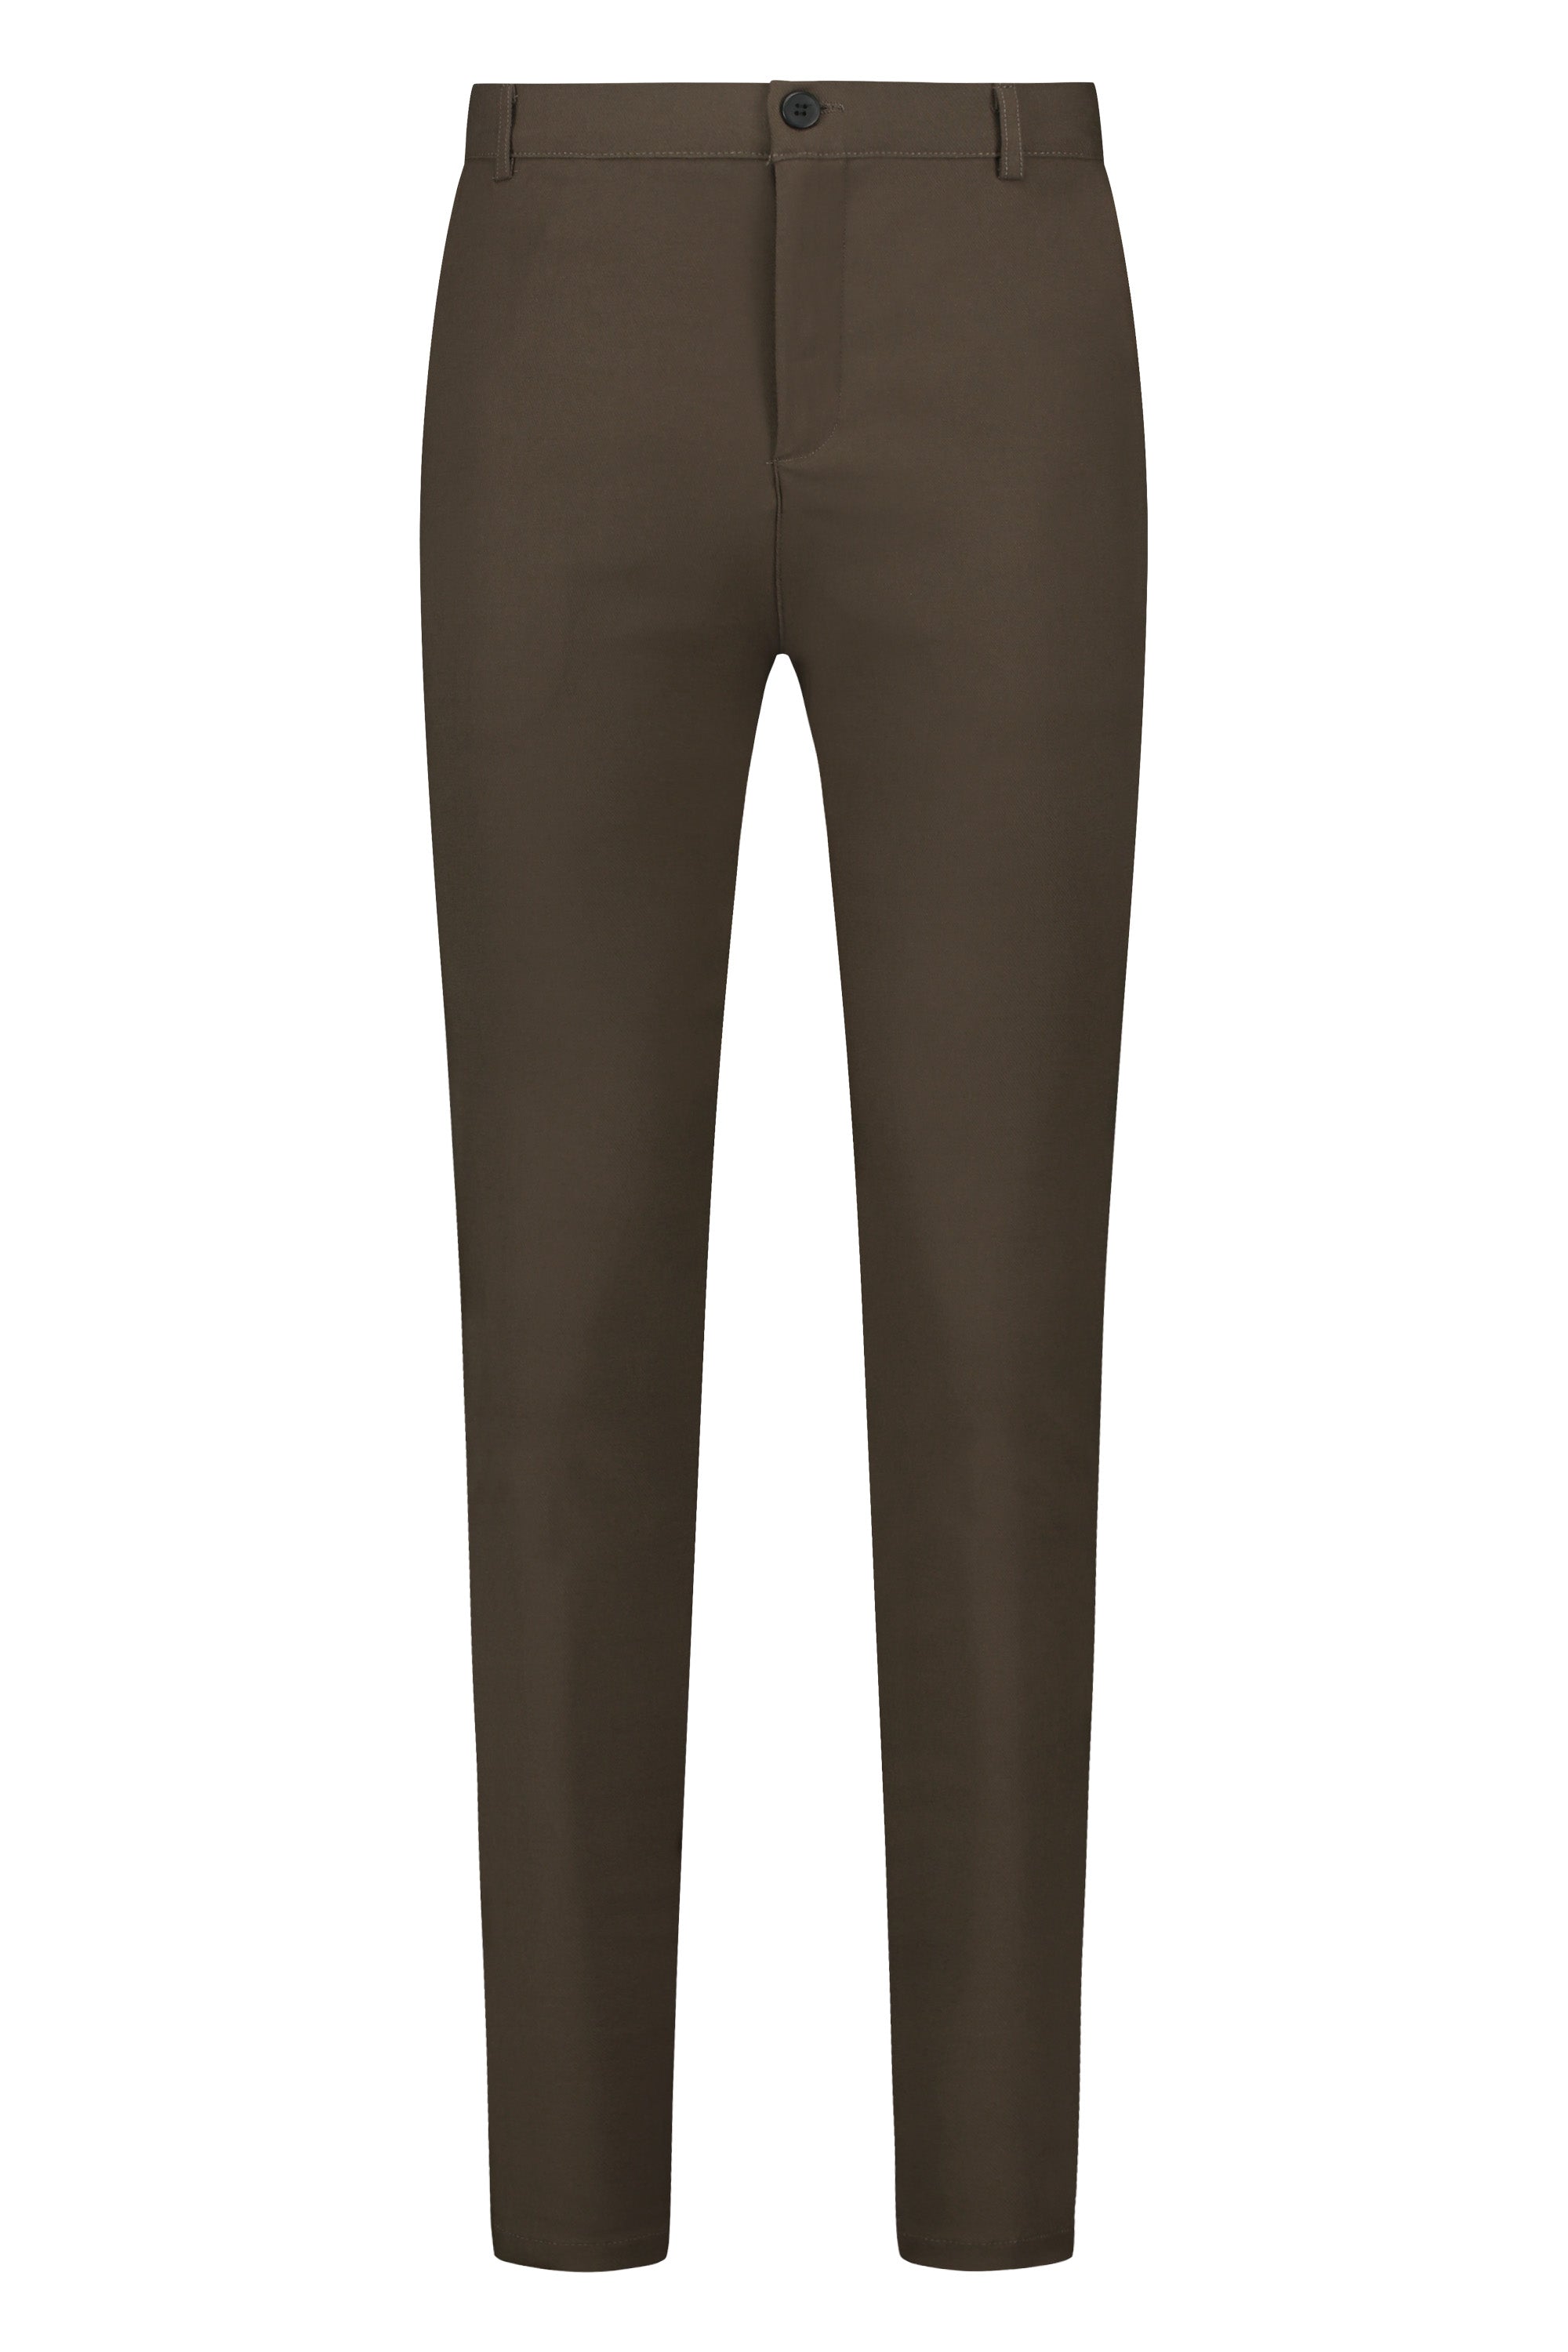 Super stretch trousers brown